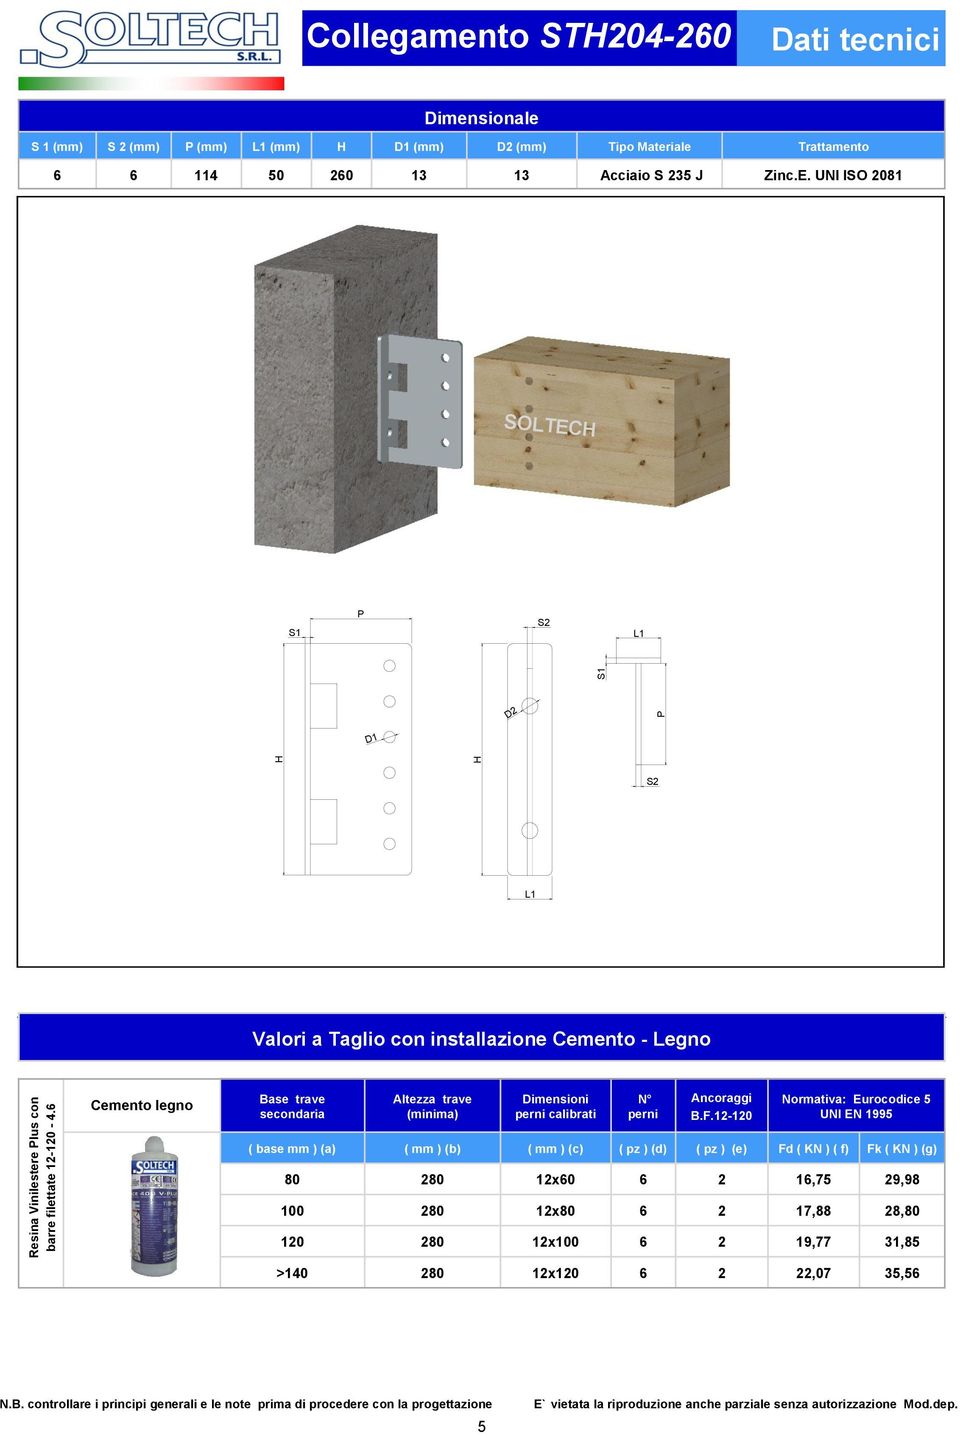 UNI ISO 2081 D2 D1 Cemento legno Base trave secondaria Altezza trave (minima) Dimensioni perni calibrati N perni Ancoraggi B.F.